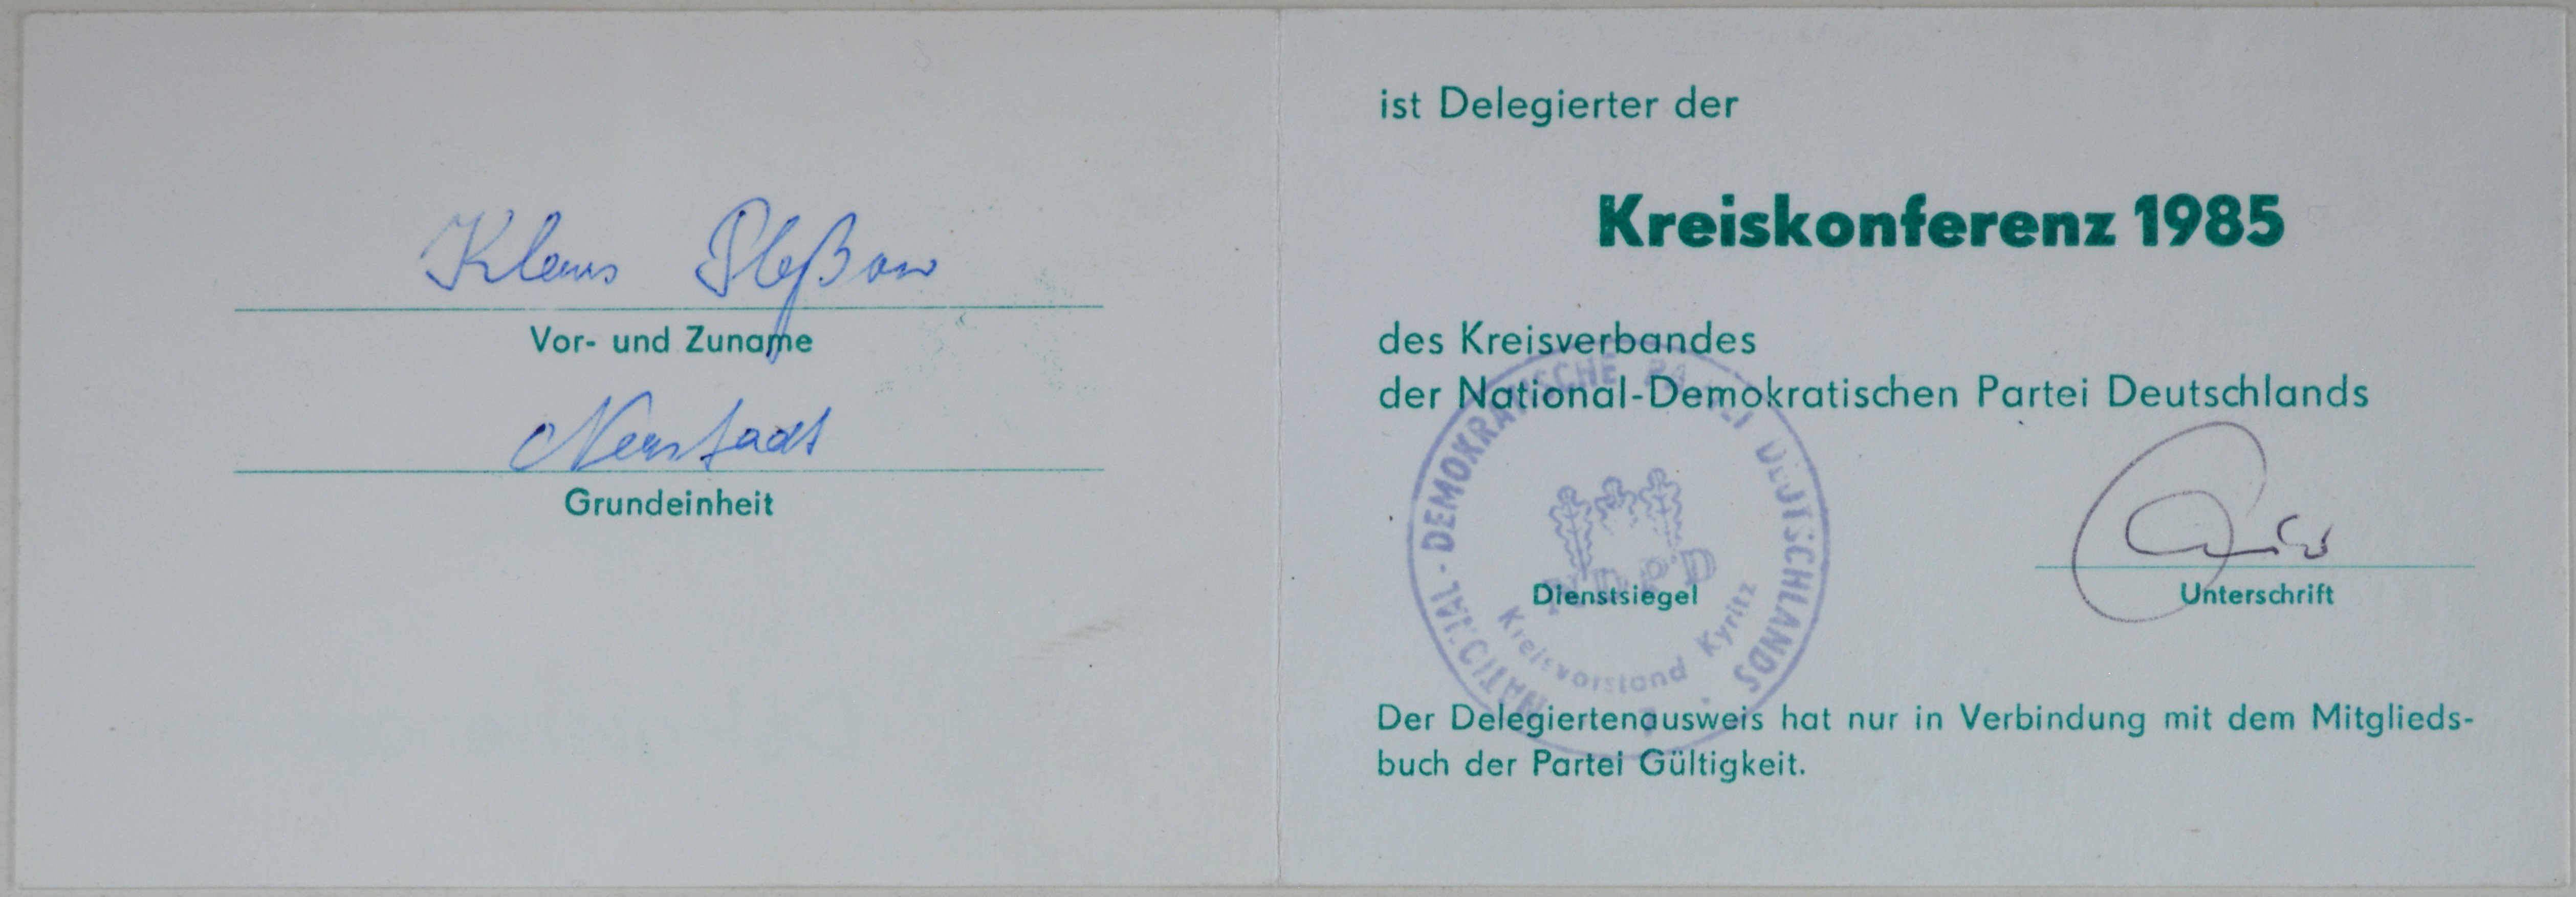 Delegiertenausweis für die Kreiskonferenz der National-Demokratischen Partei Deutschlands 1985 (DDR Geschichtsmuseum im Dokumentationszentrum Perleberg CC BY-SA)